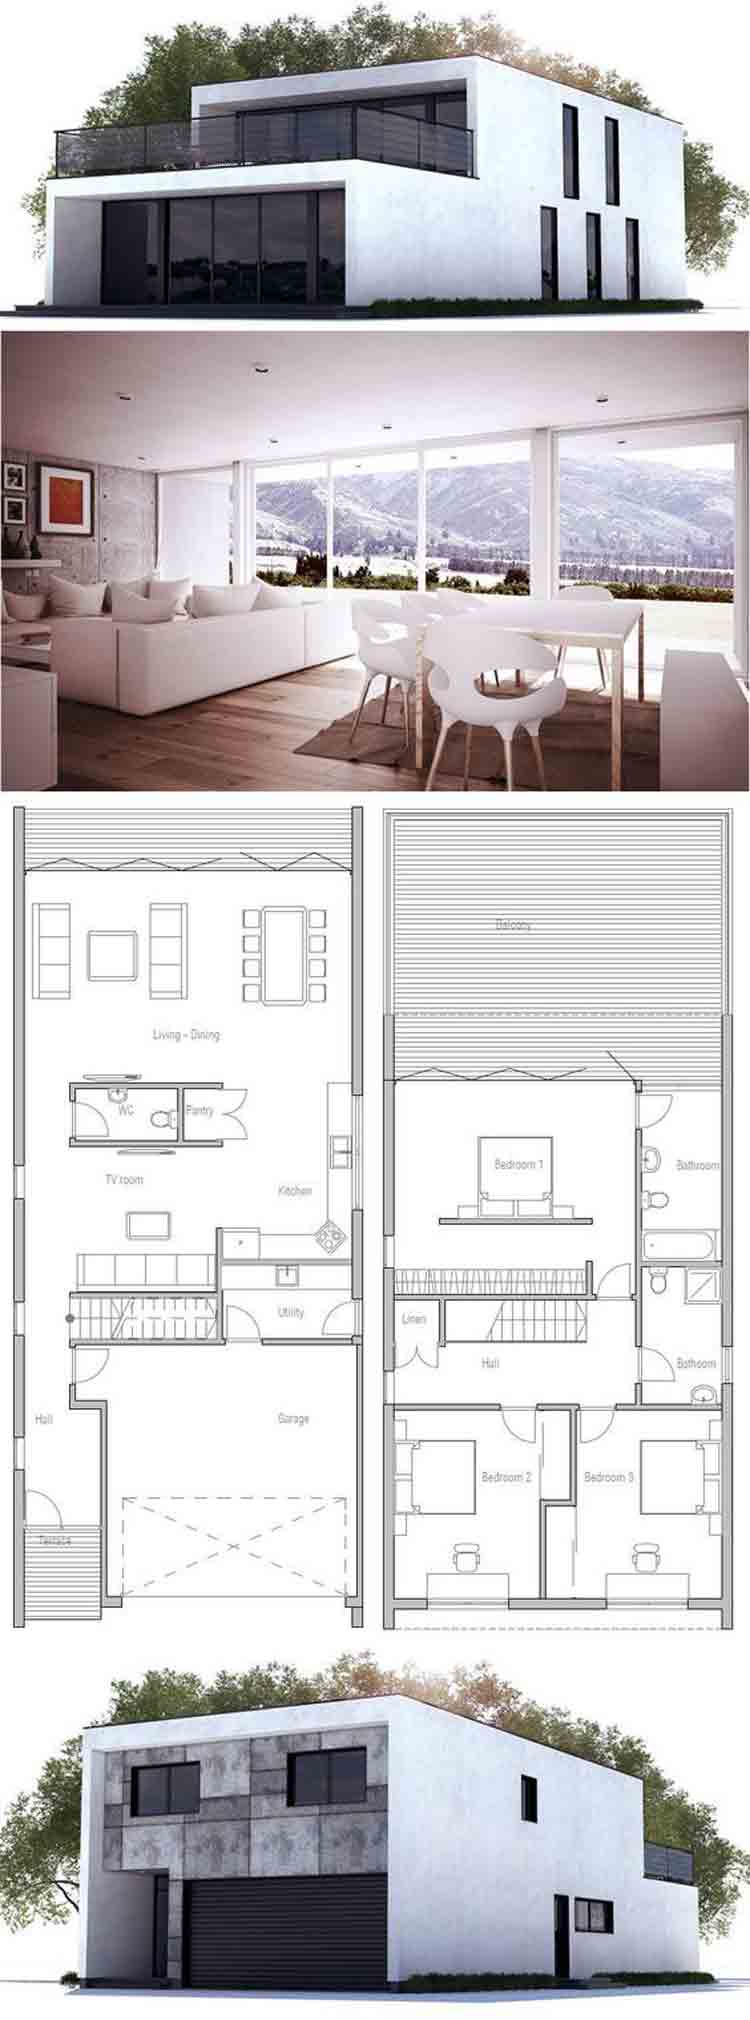 60 Desain dan Denah  Rumah  Minimalis  Sederhana  Modern